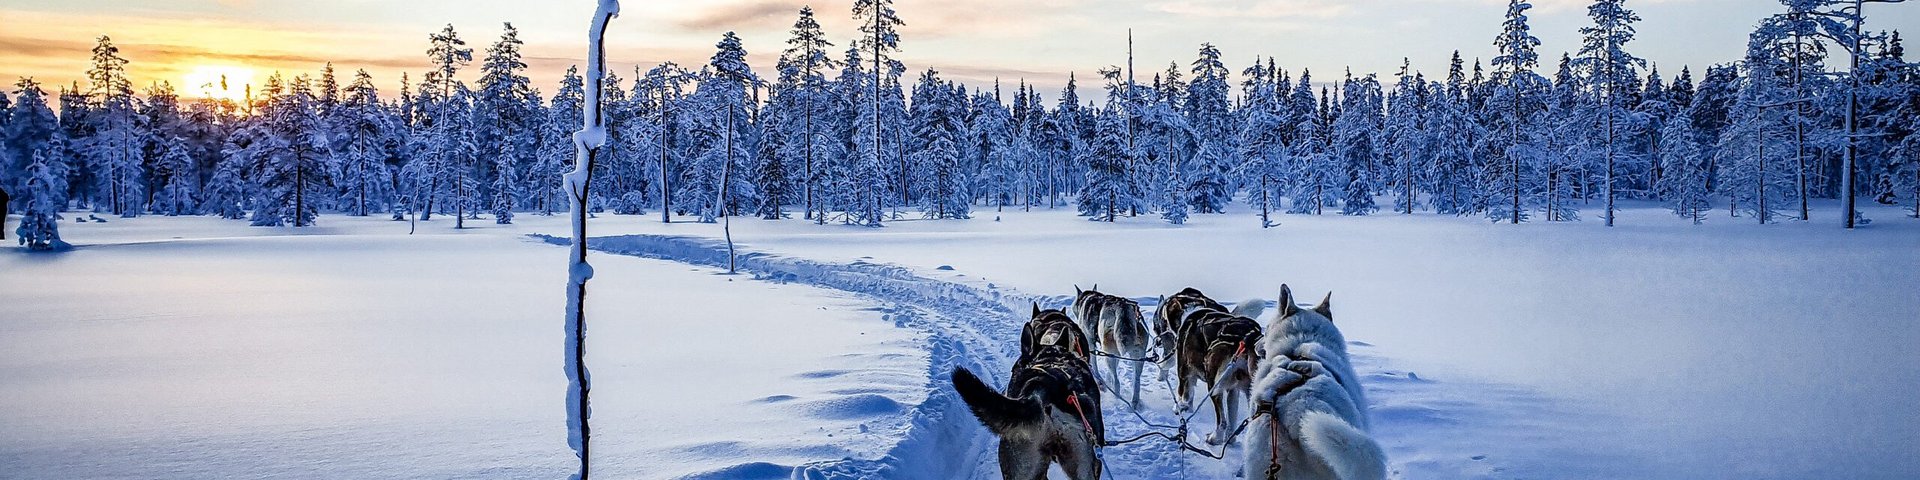 Mehrere Huskies ziehen einen Schlitten durch die verschneite Landschaft Lapplands